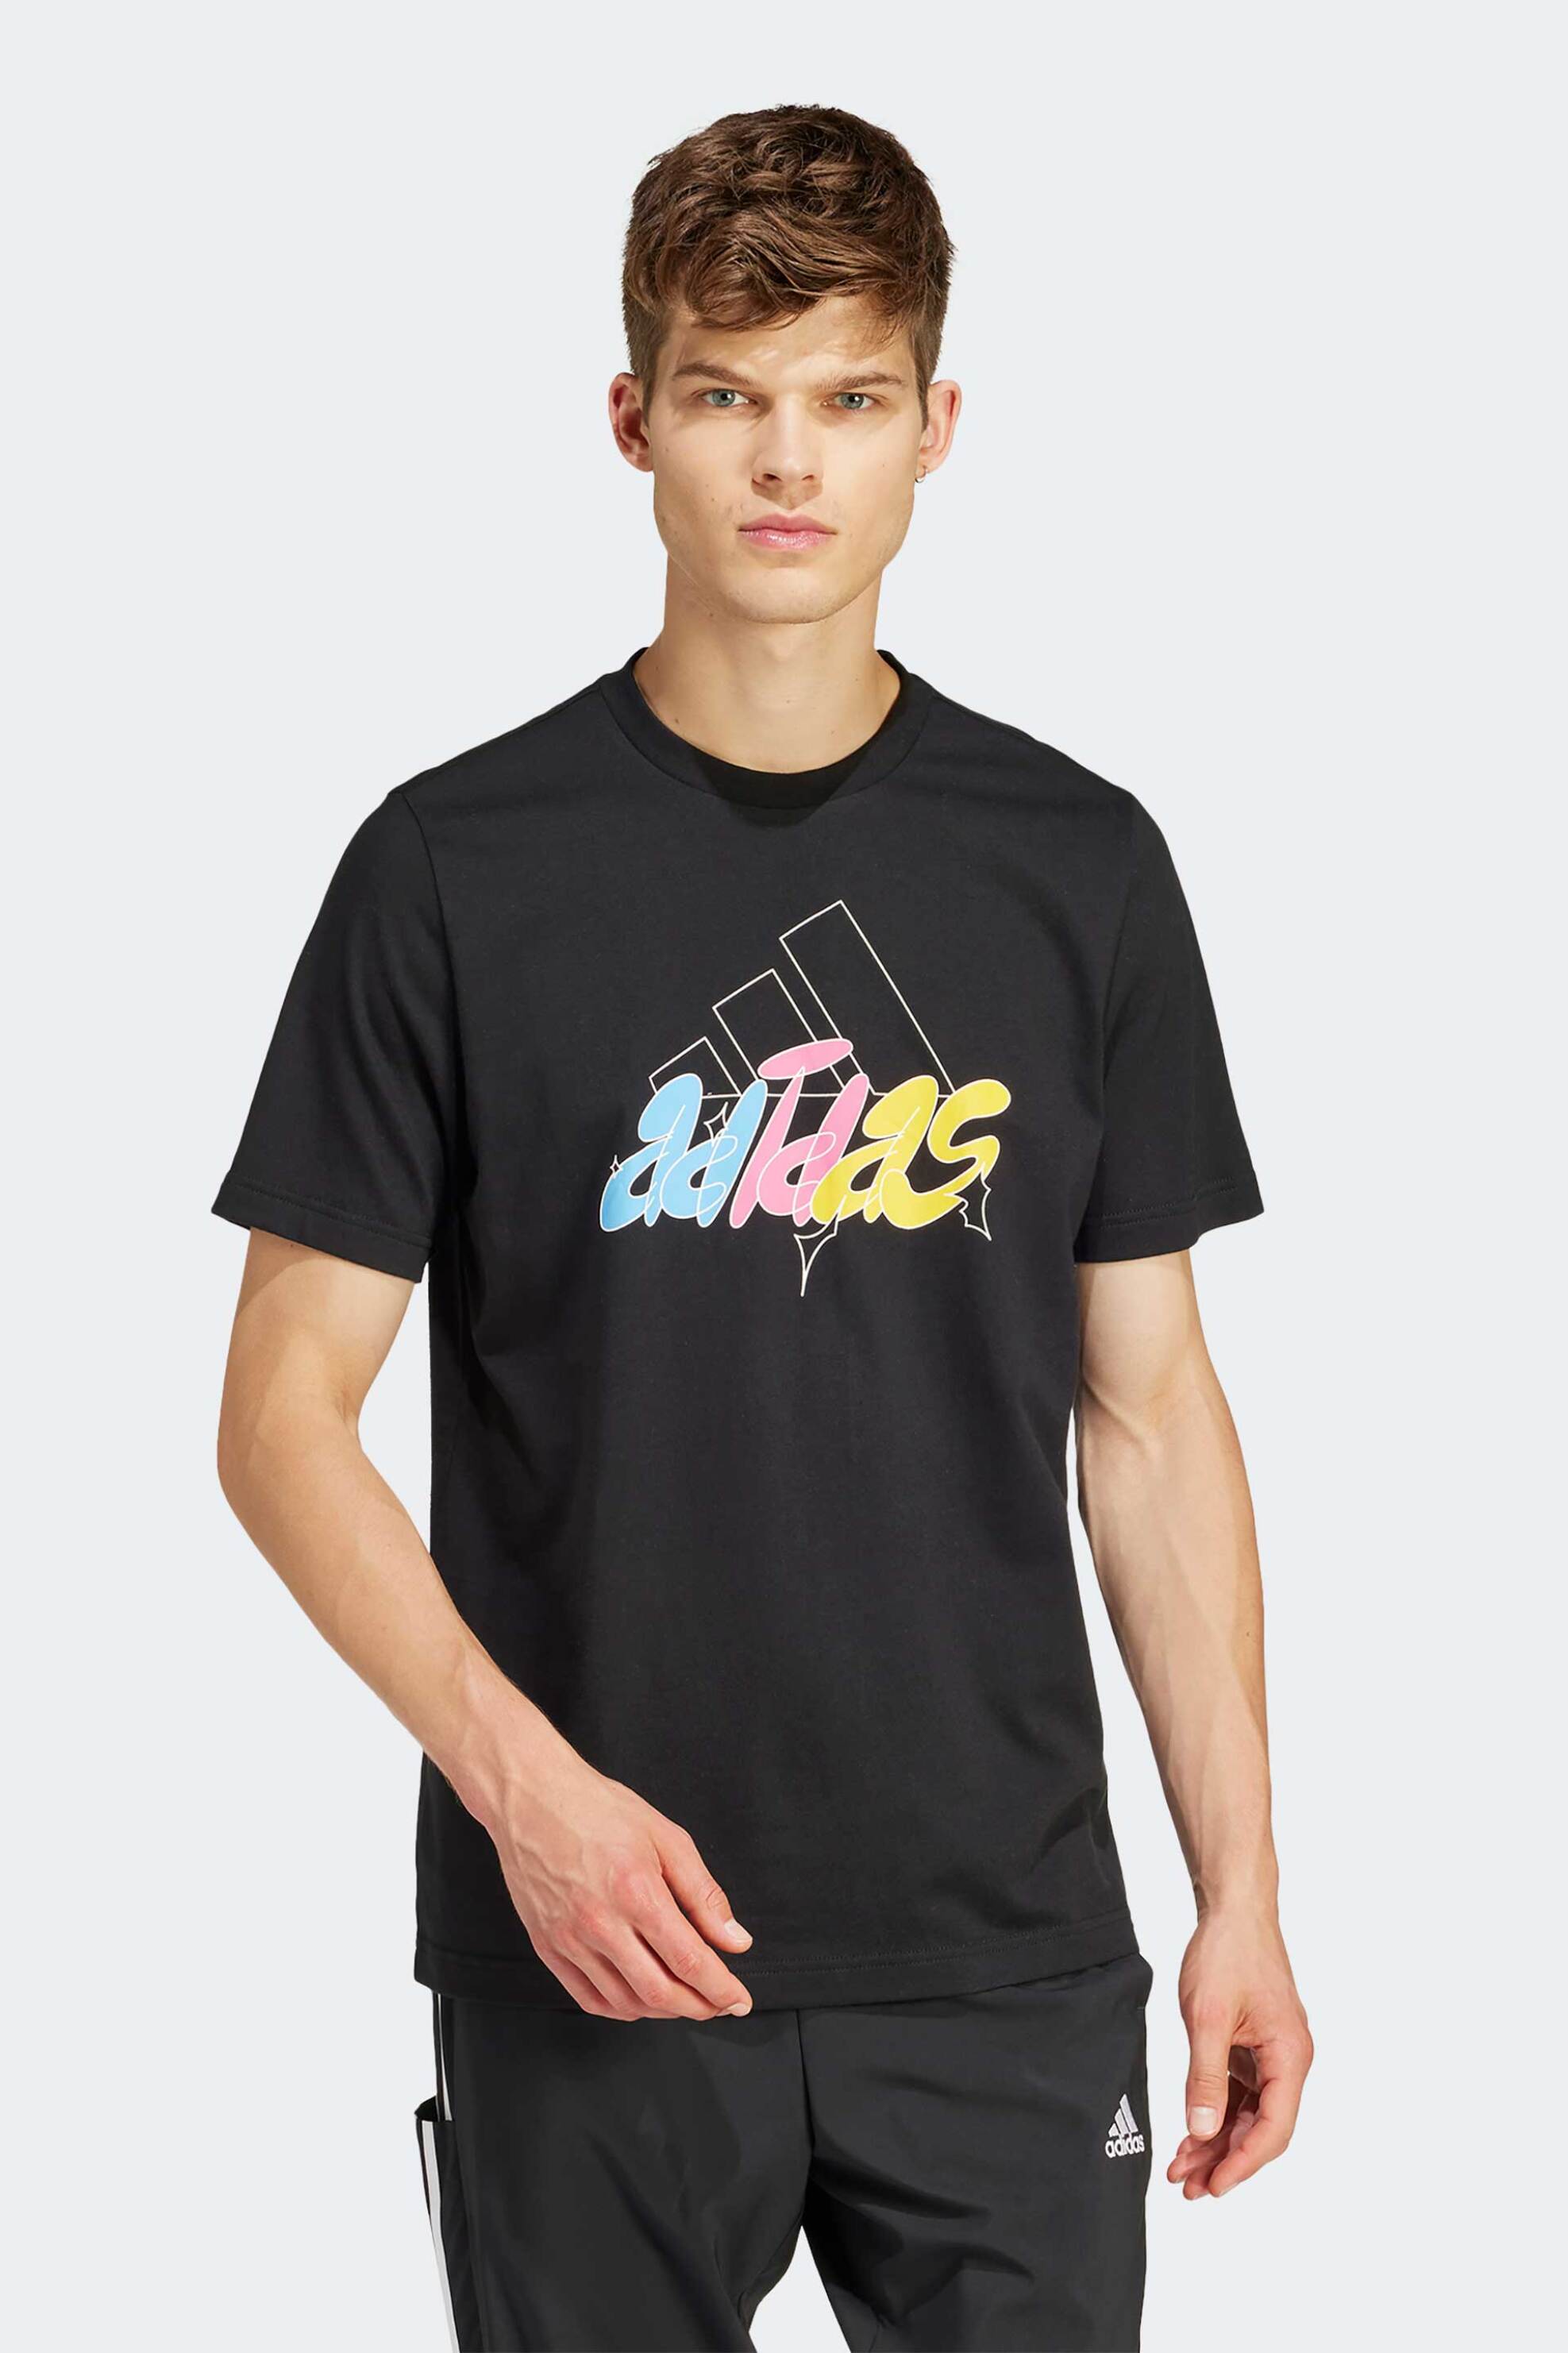 Άνδρας > ΑΘΛΗΤΙΚΑ > Αθλητικά Ρούχα > Αθλητικές Μπλούζες > Αθλητικά T-Shirts Adidas ανδρικό T-shirt με logo print στο στήθος - IS2864 Μαύρο